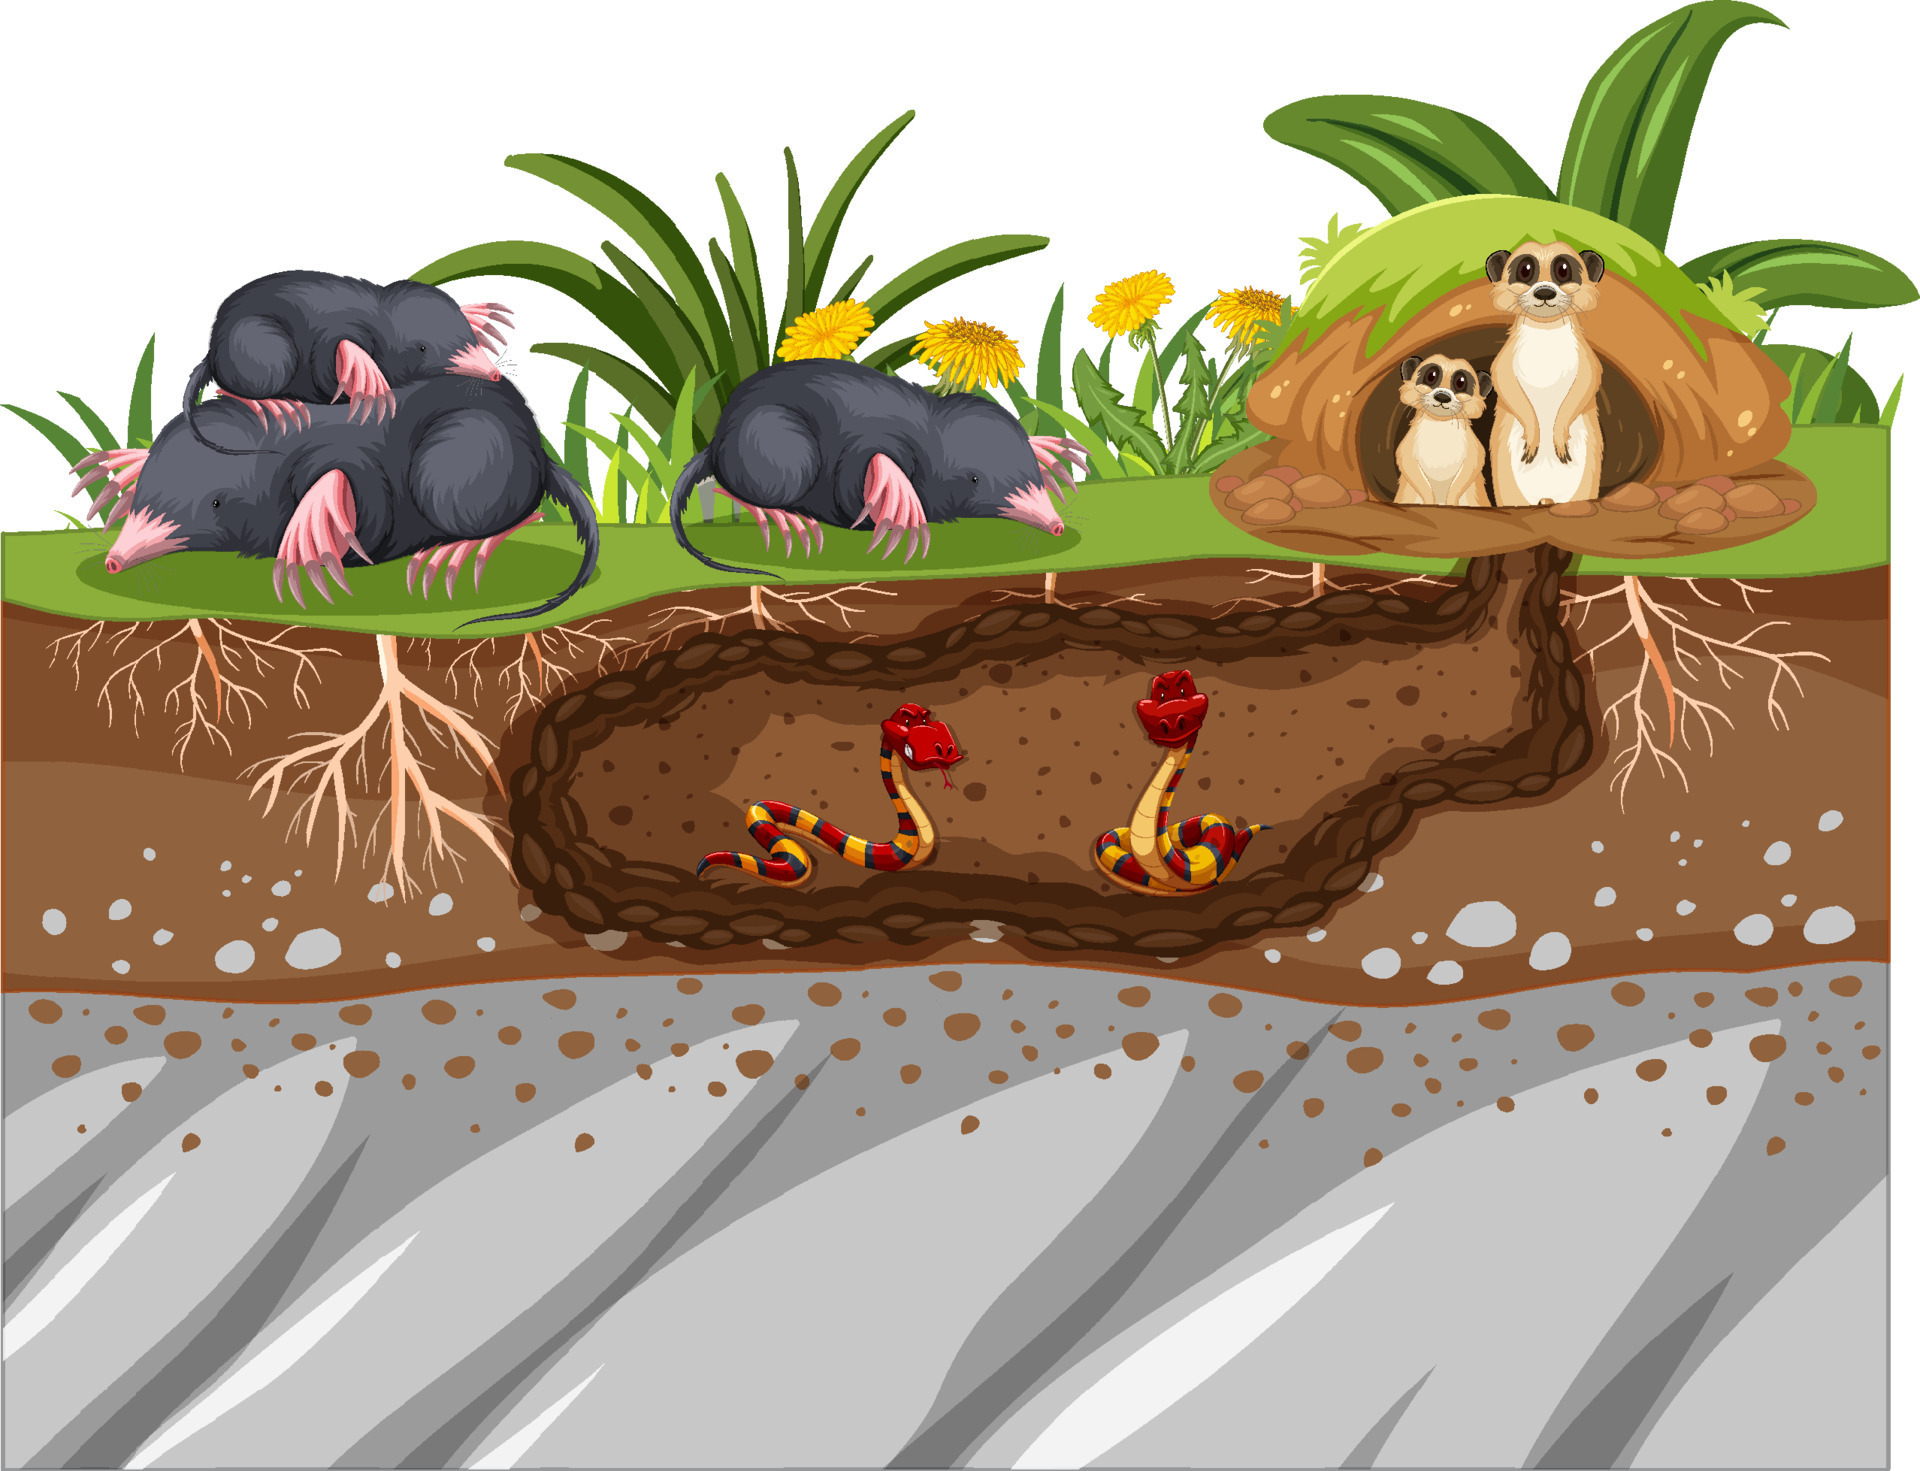 Underground animal hole in cartoon style 8619817 Vector Art at Vecteezy